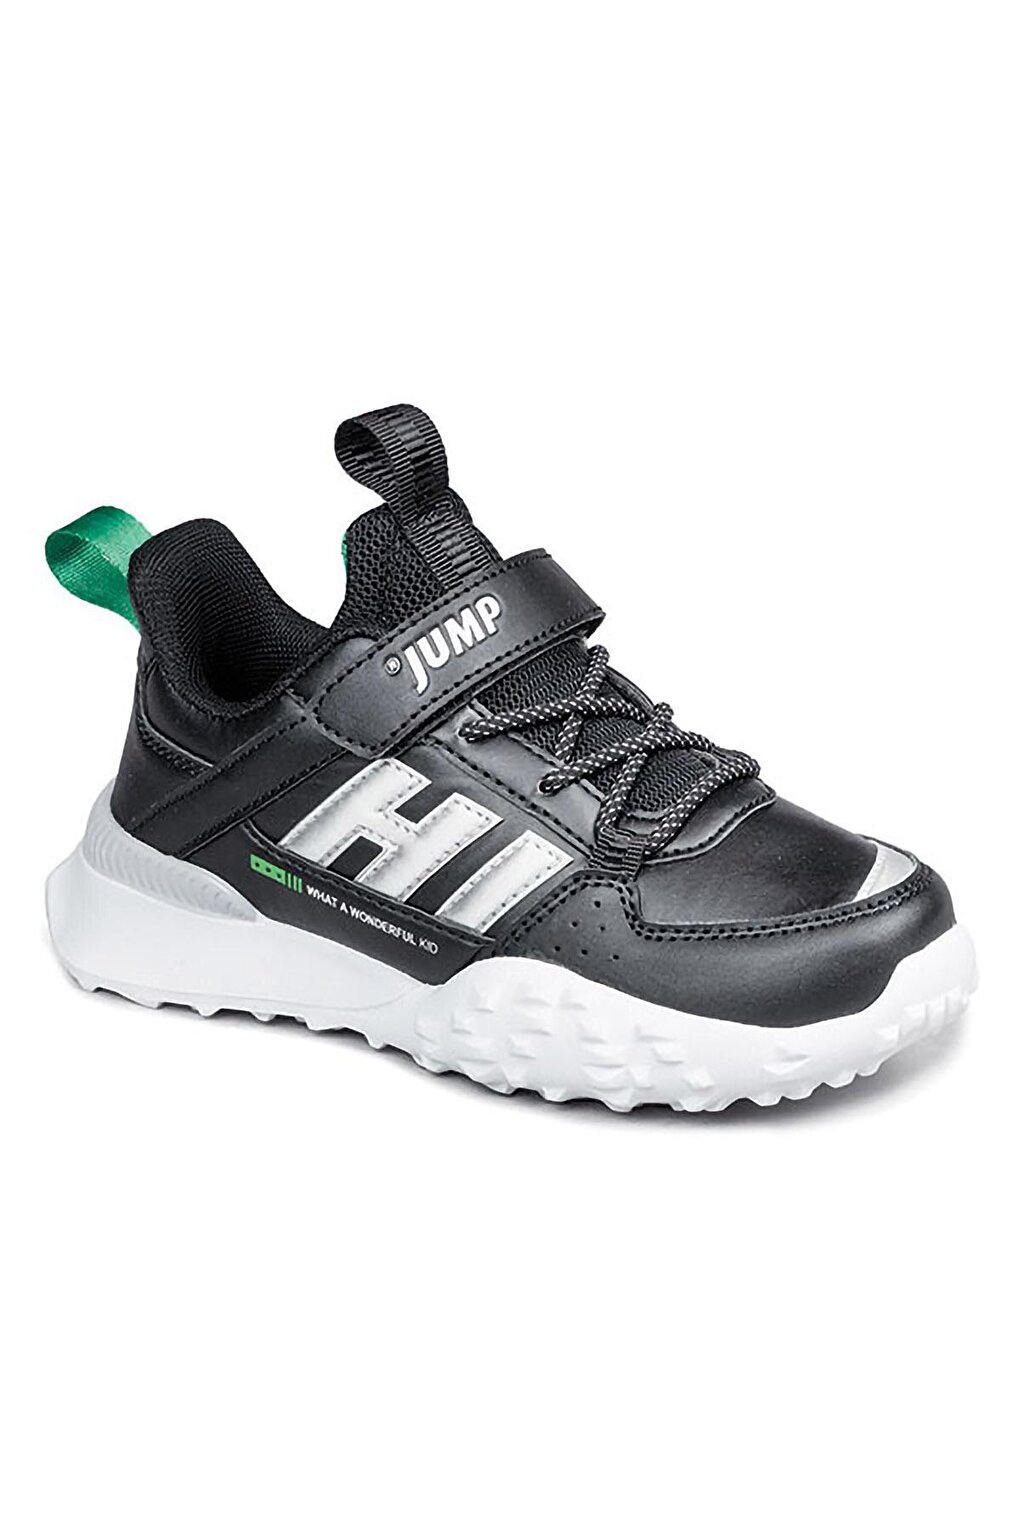 Детская спортивная обувь унисекс Jump, черно-зеленый